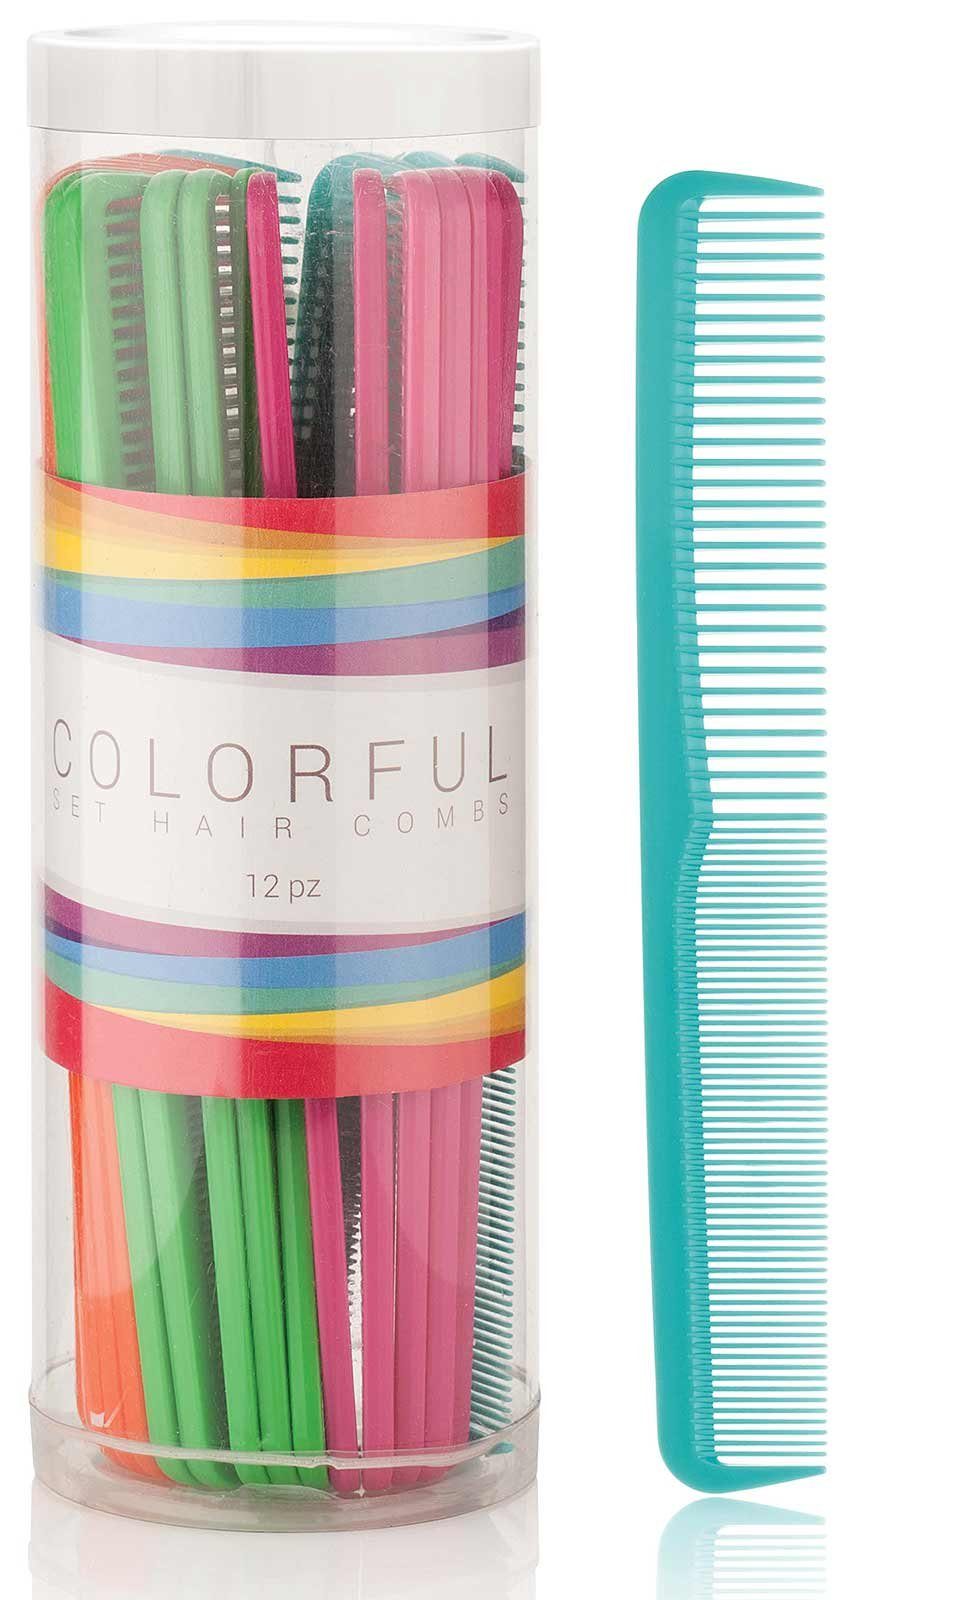 Kosmetex Haarkamm Haarschneidekamm 24er Set, in mehreren Farben